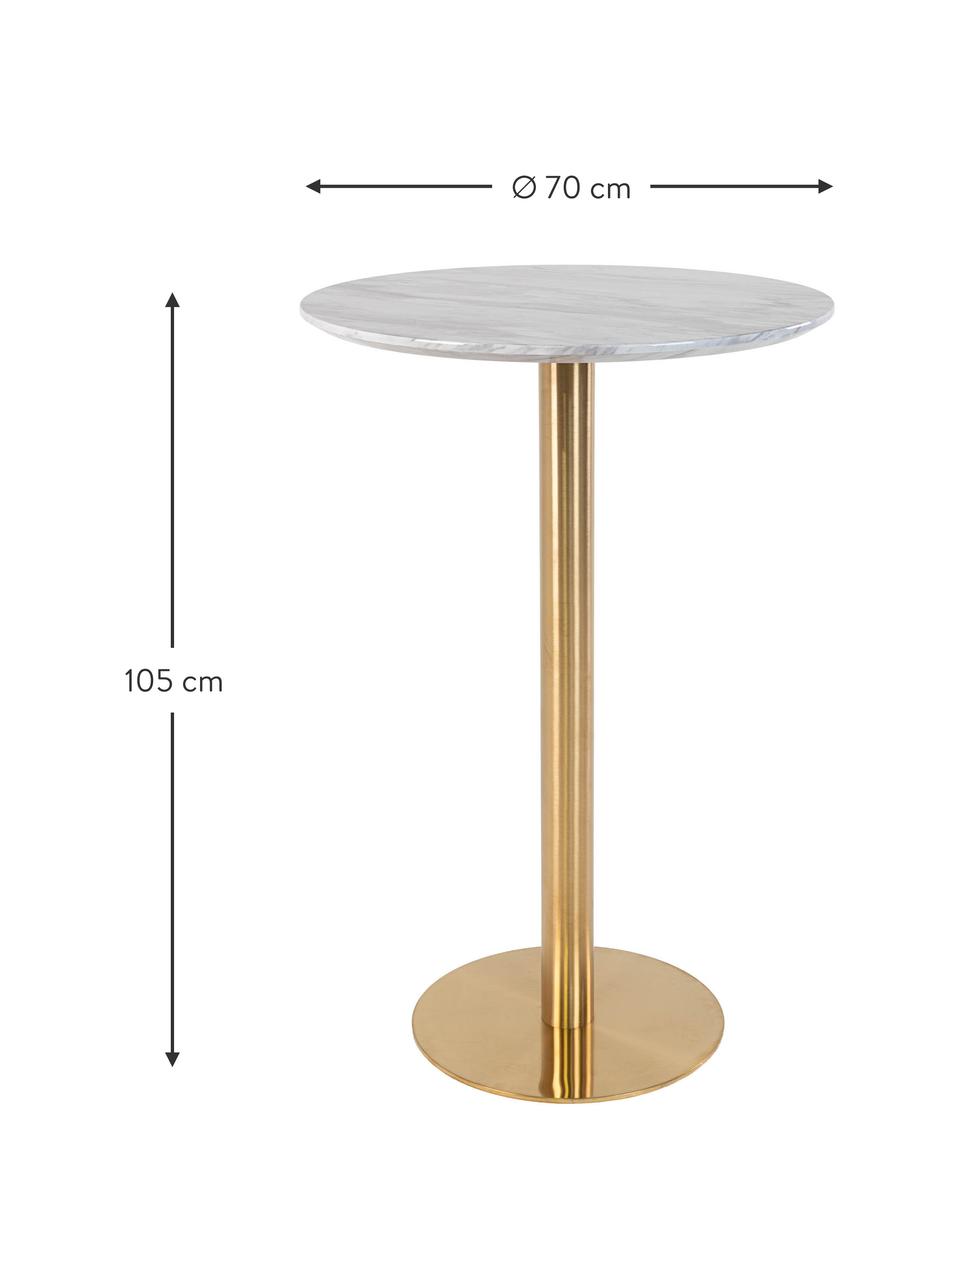 Kulatý jídelní stůl v mramorovém vzhledu Bolzano, Ø 70 cm, Bílá mramorovaná, zlatá, Ø 70 cm, V 105 cm